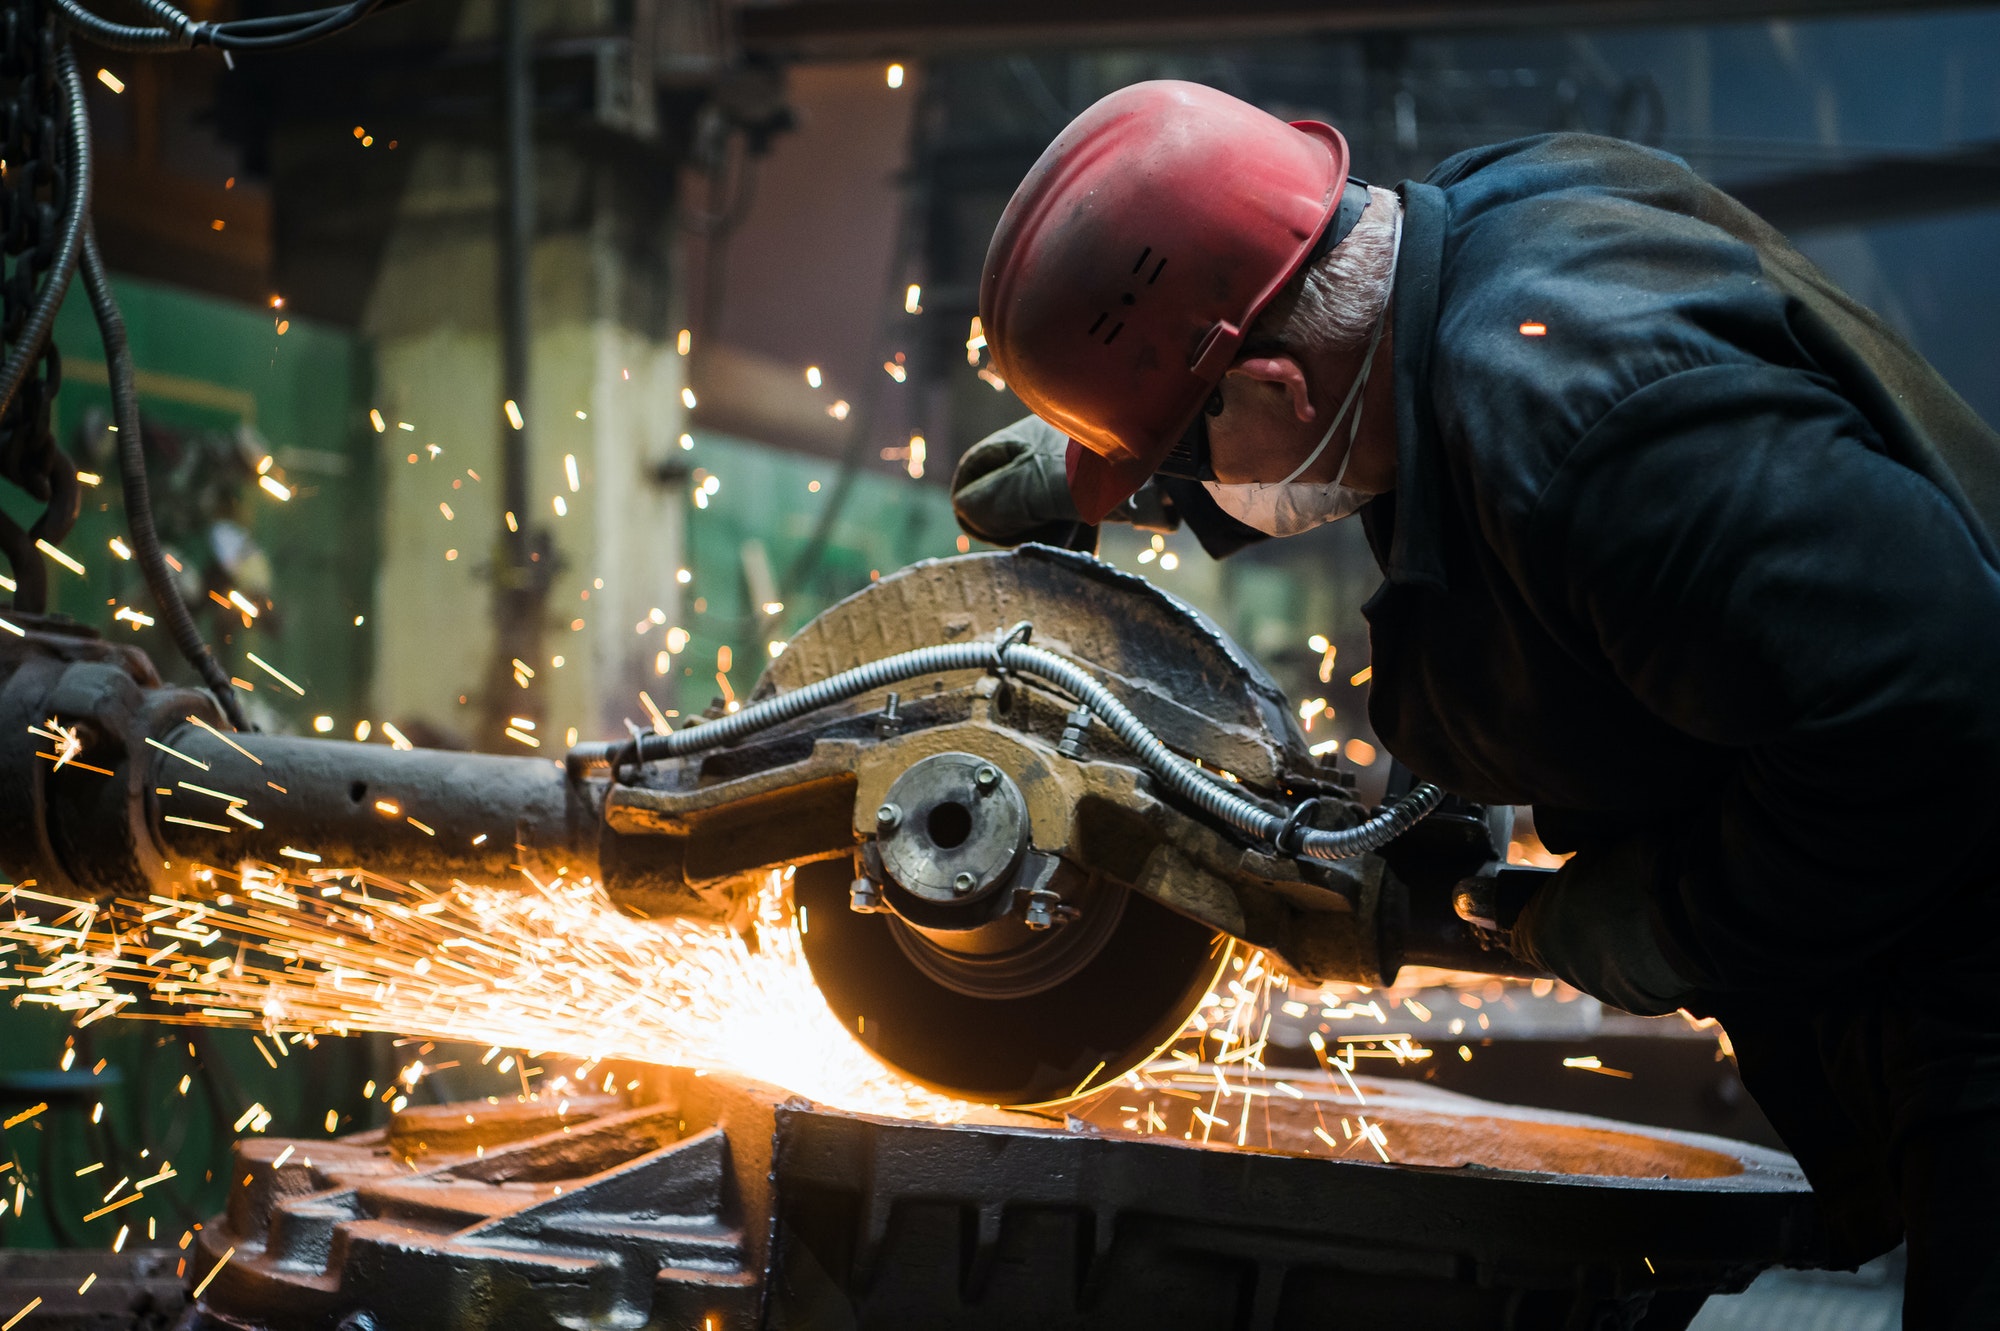 worker-grinding-metal-metal-grinding-machine-with-sparks-metal-sawing.jpg